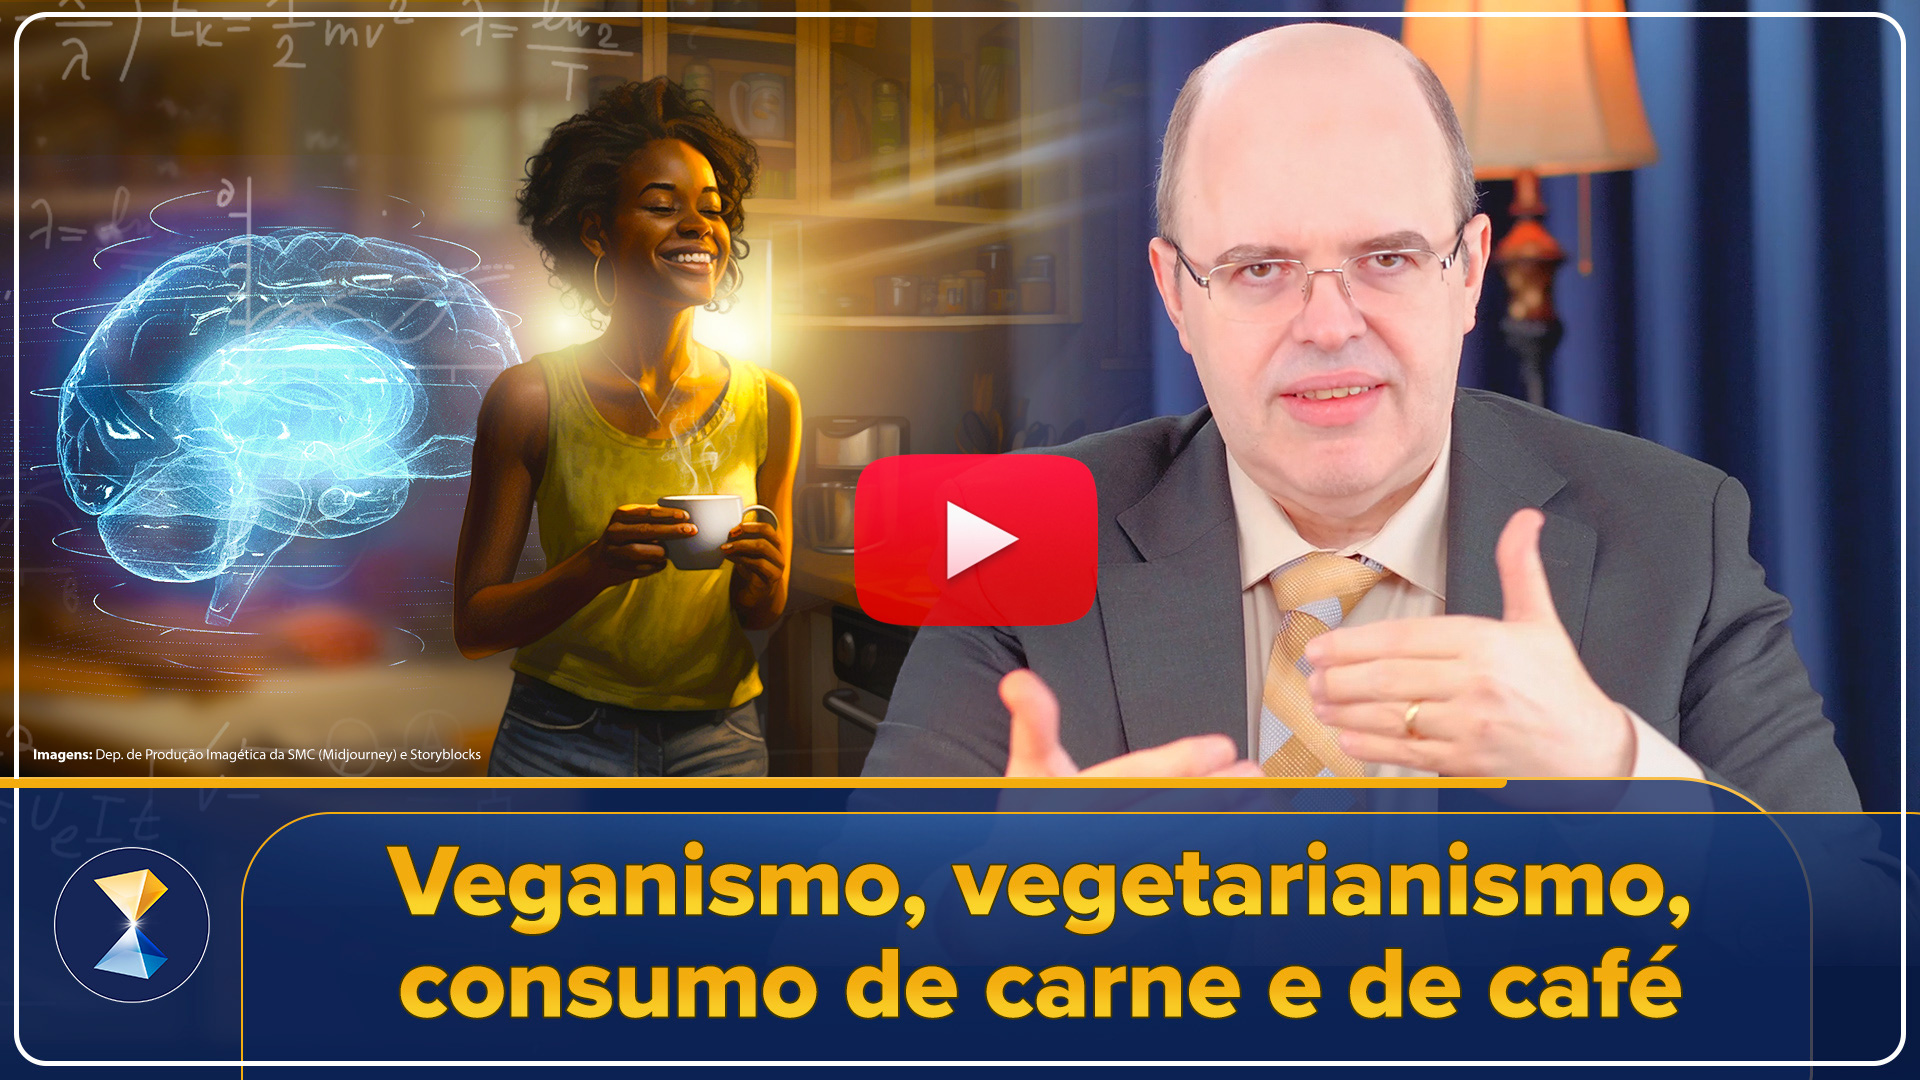 Veganismo, vegetarianismo, consumo de carne e de café